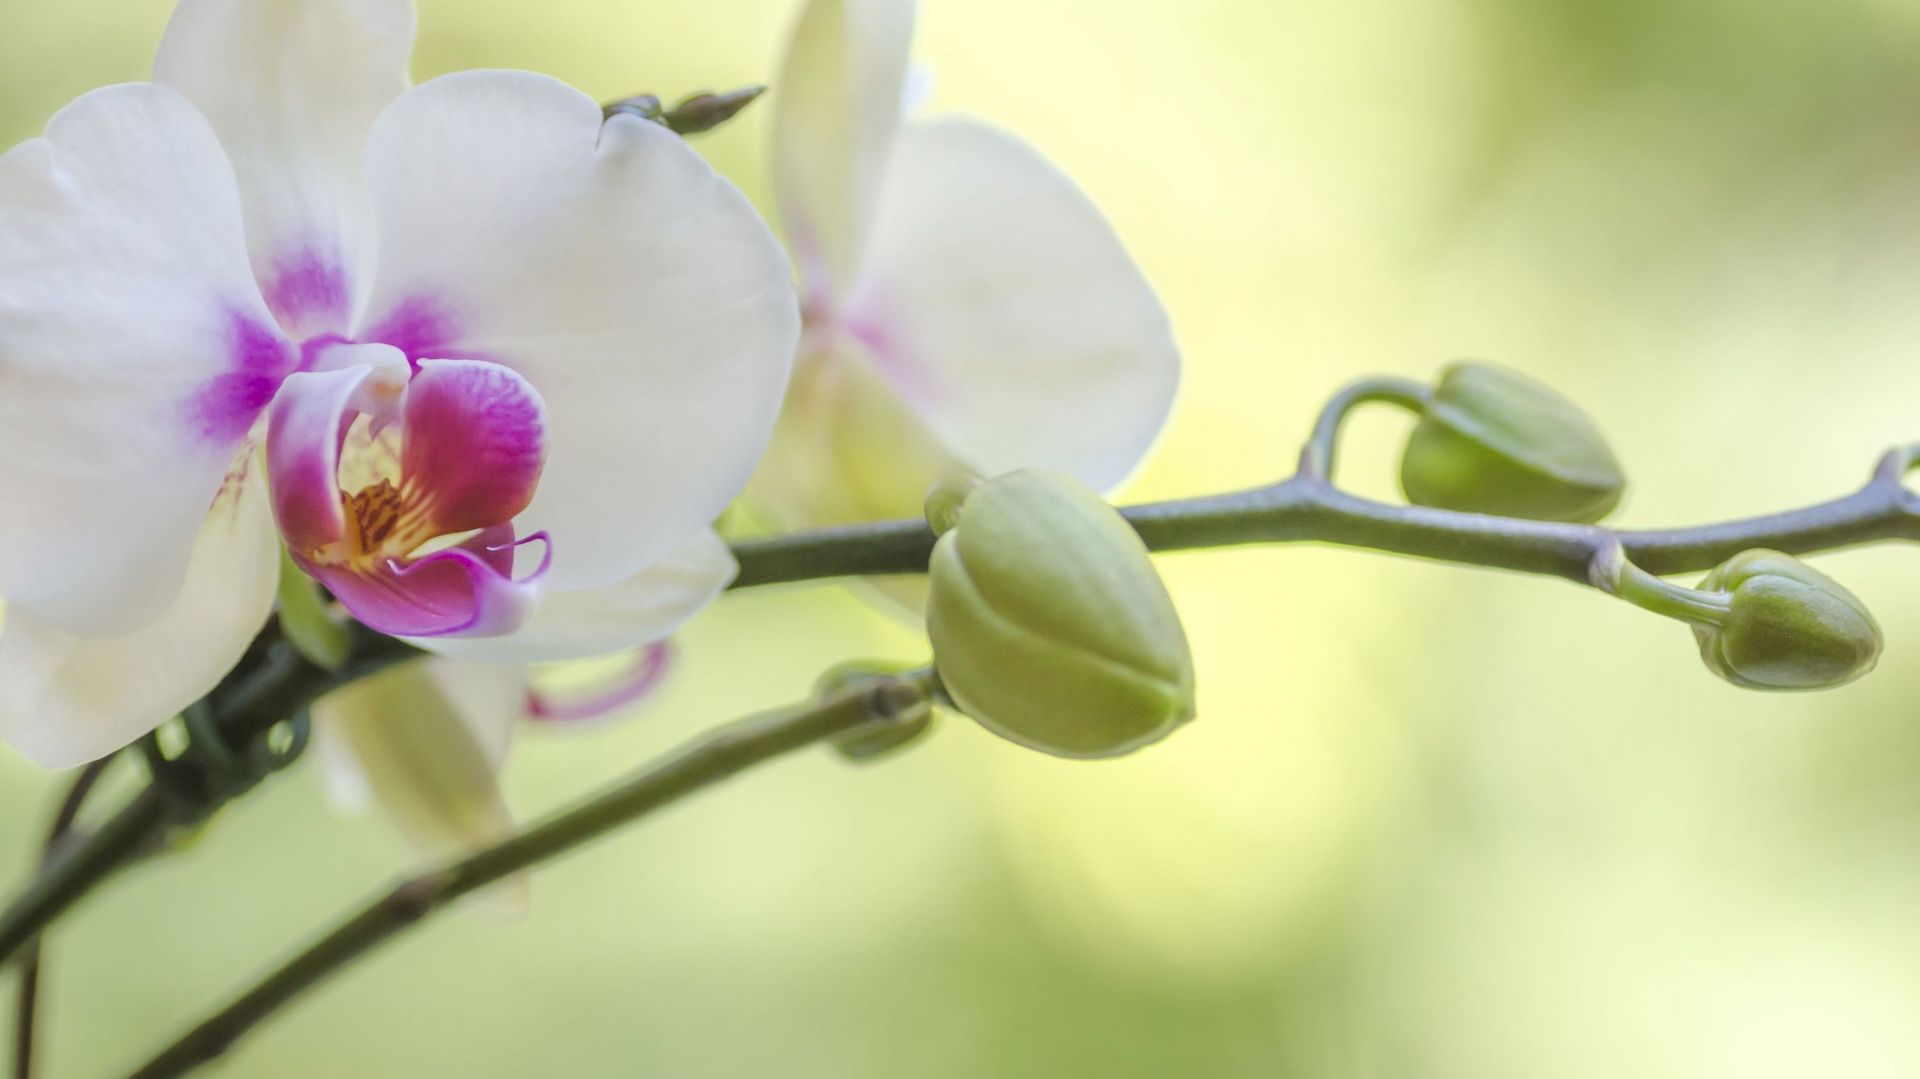 Les boutons d’orchidées redoutent la sécheresse. Ils sont fragiles et ont besoin d’un environnement humide pour s’épanouir.